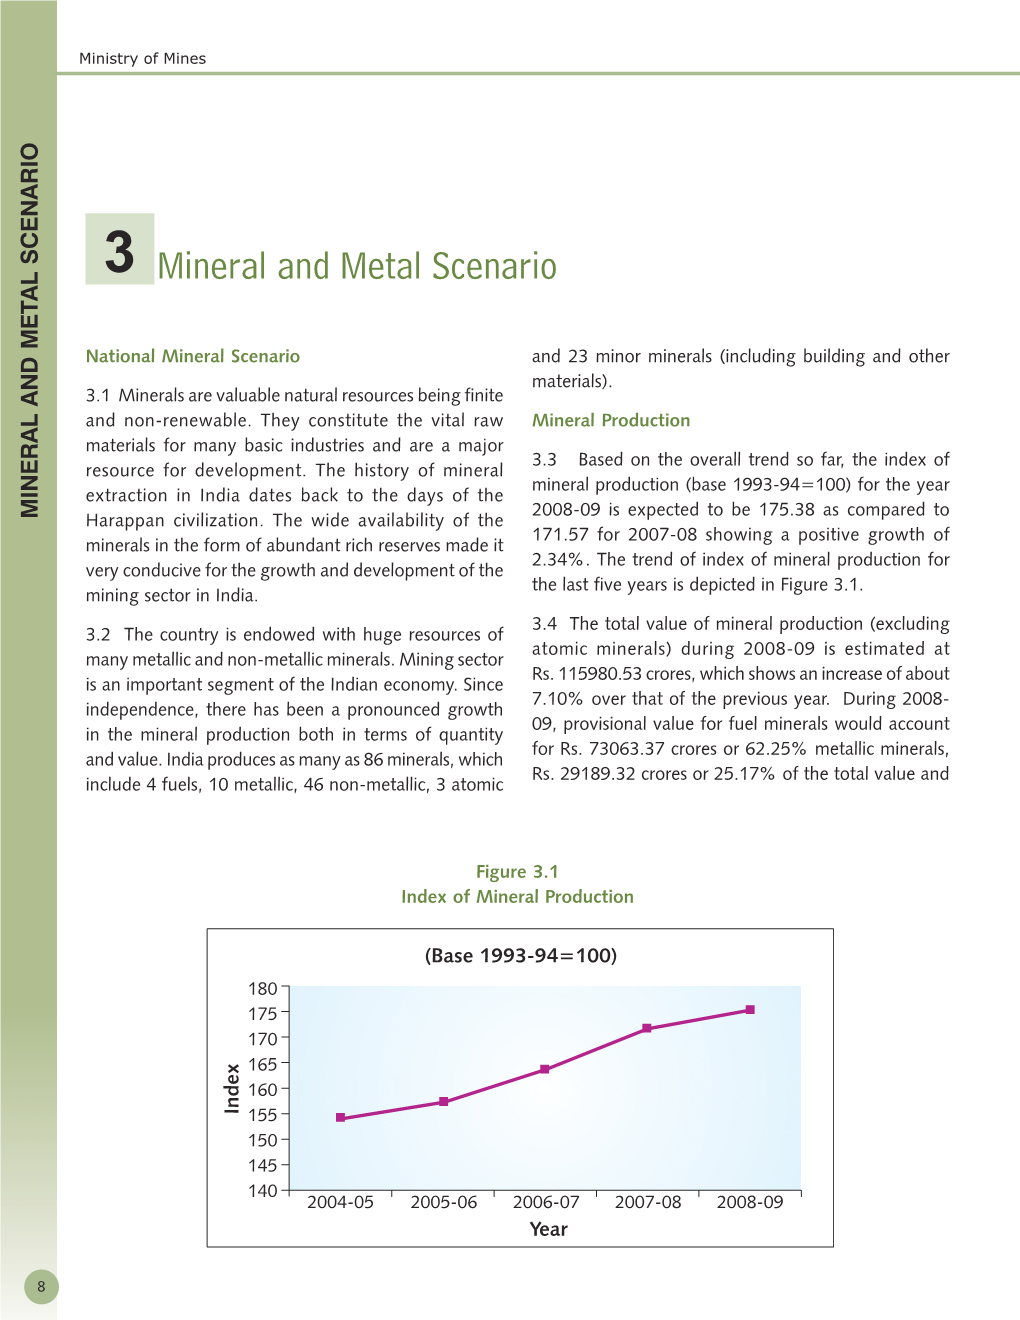 Mineral and Metal Scenario AL SCENARIO AL